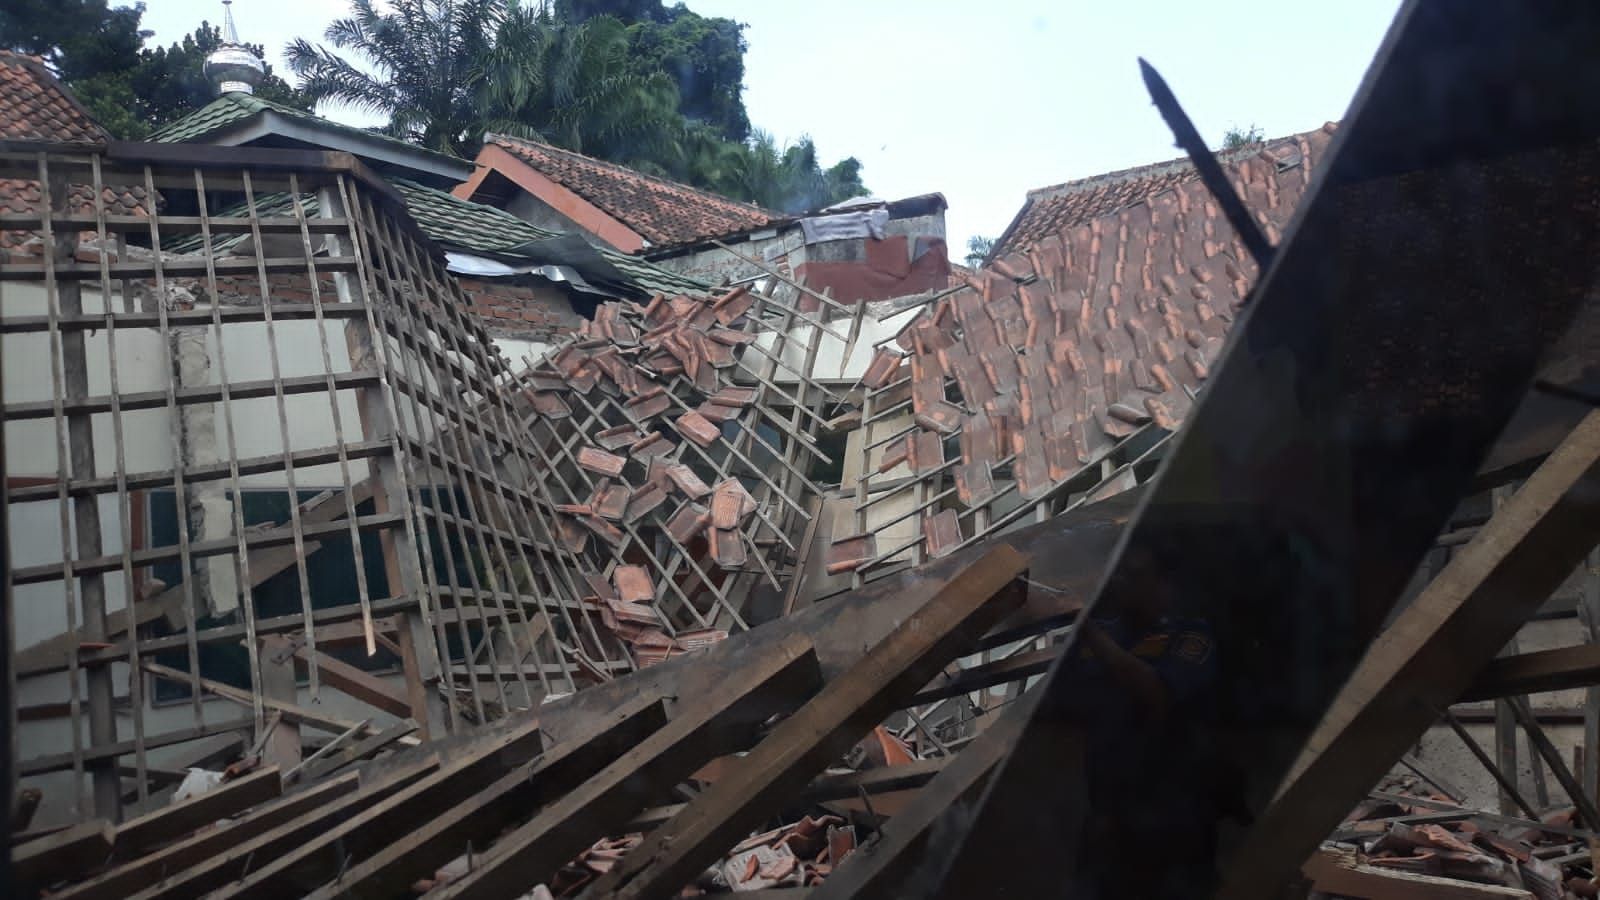 Atap sekolah dasar negeri (SDN) Otisa di Bogor Tengah, Kota Bogor ambruk lantaran struktur kayu telah lapuk, Kamis 16 September 2021.